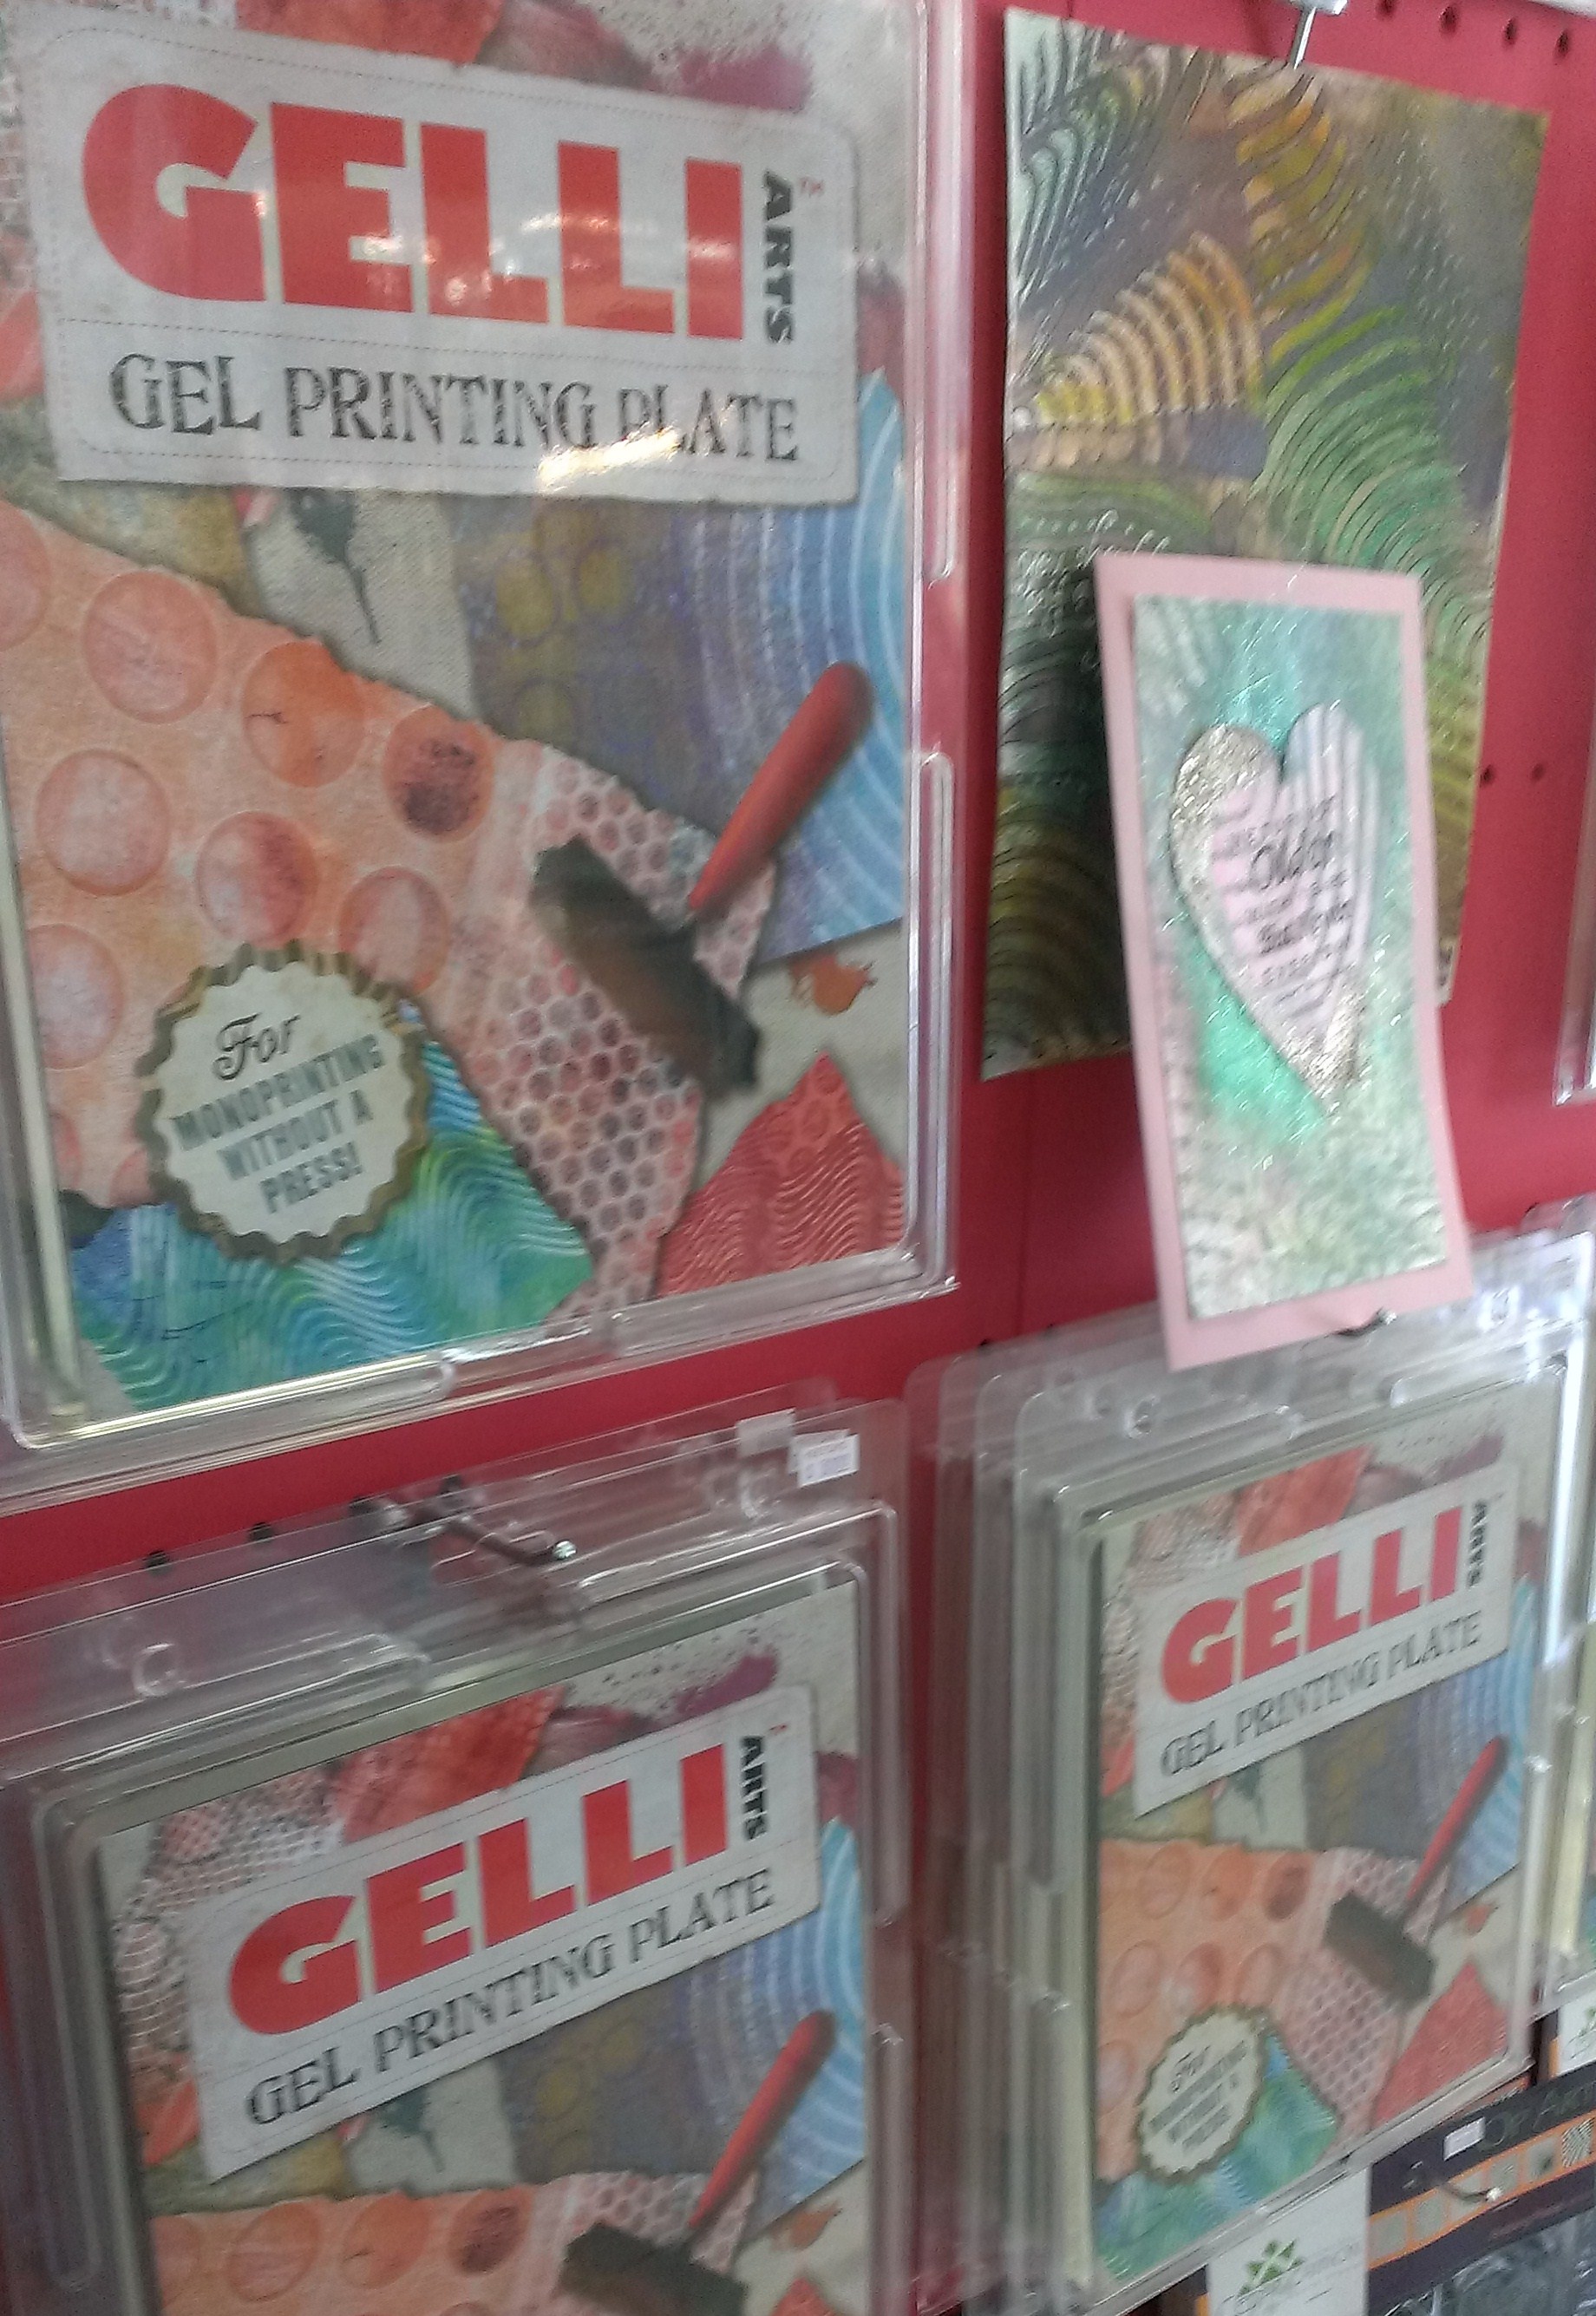 Gelli Arts 8 Round, Gel Printing Plate